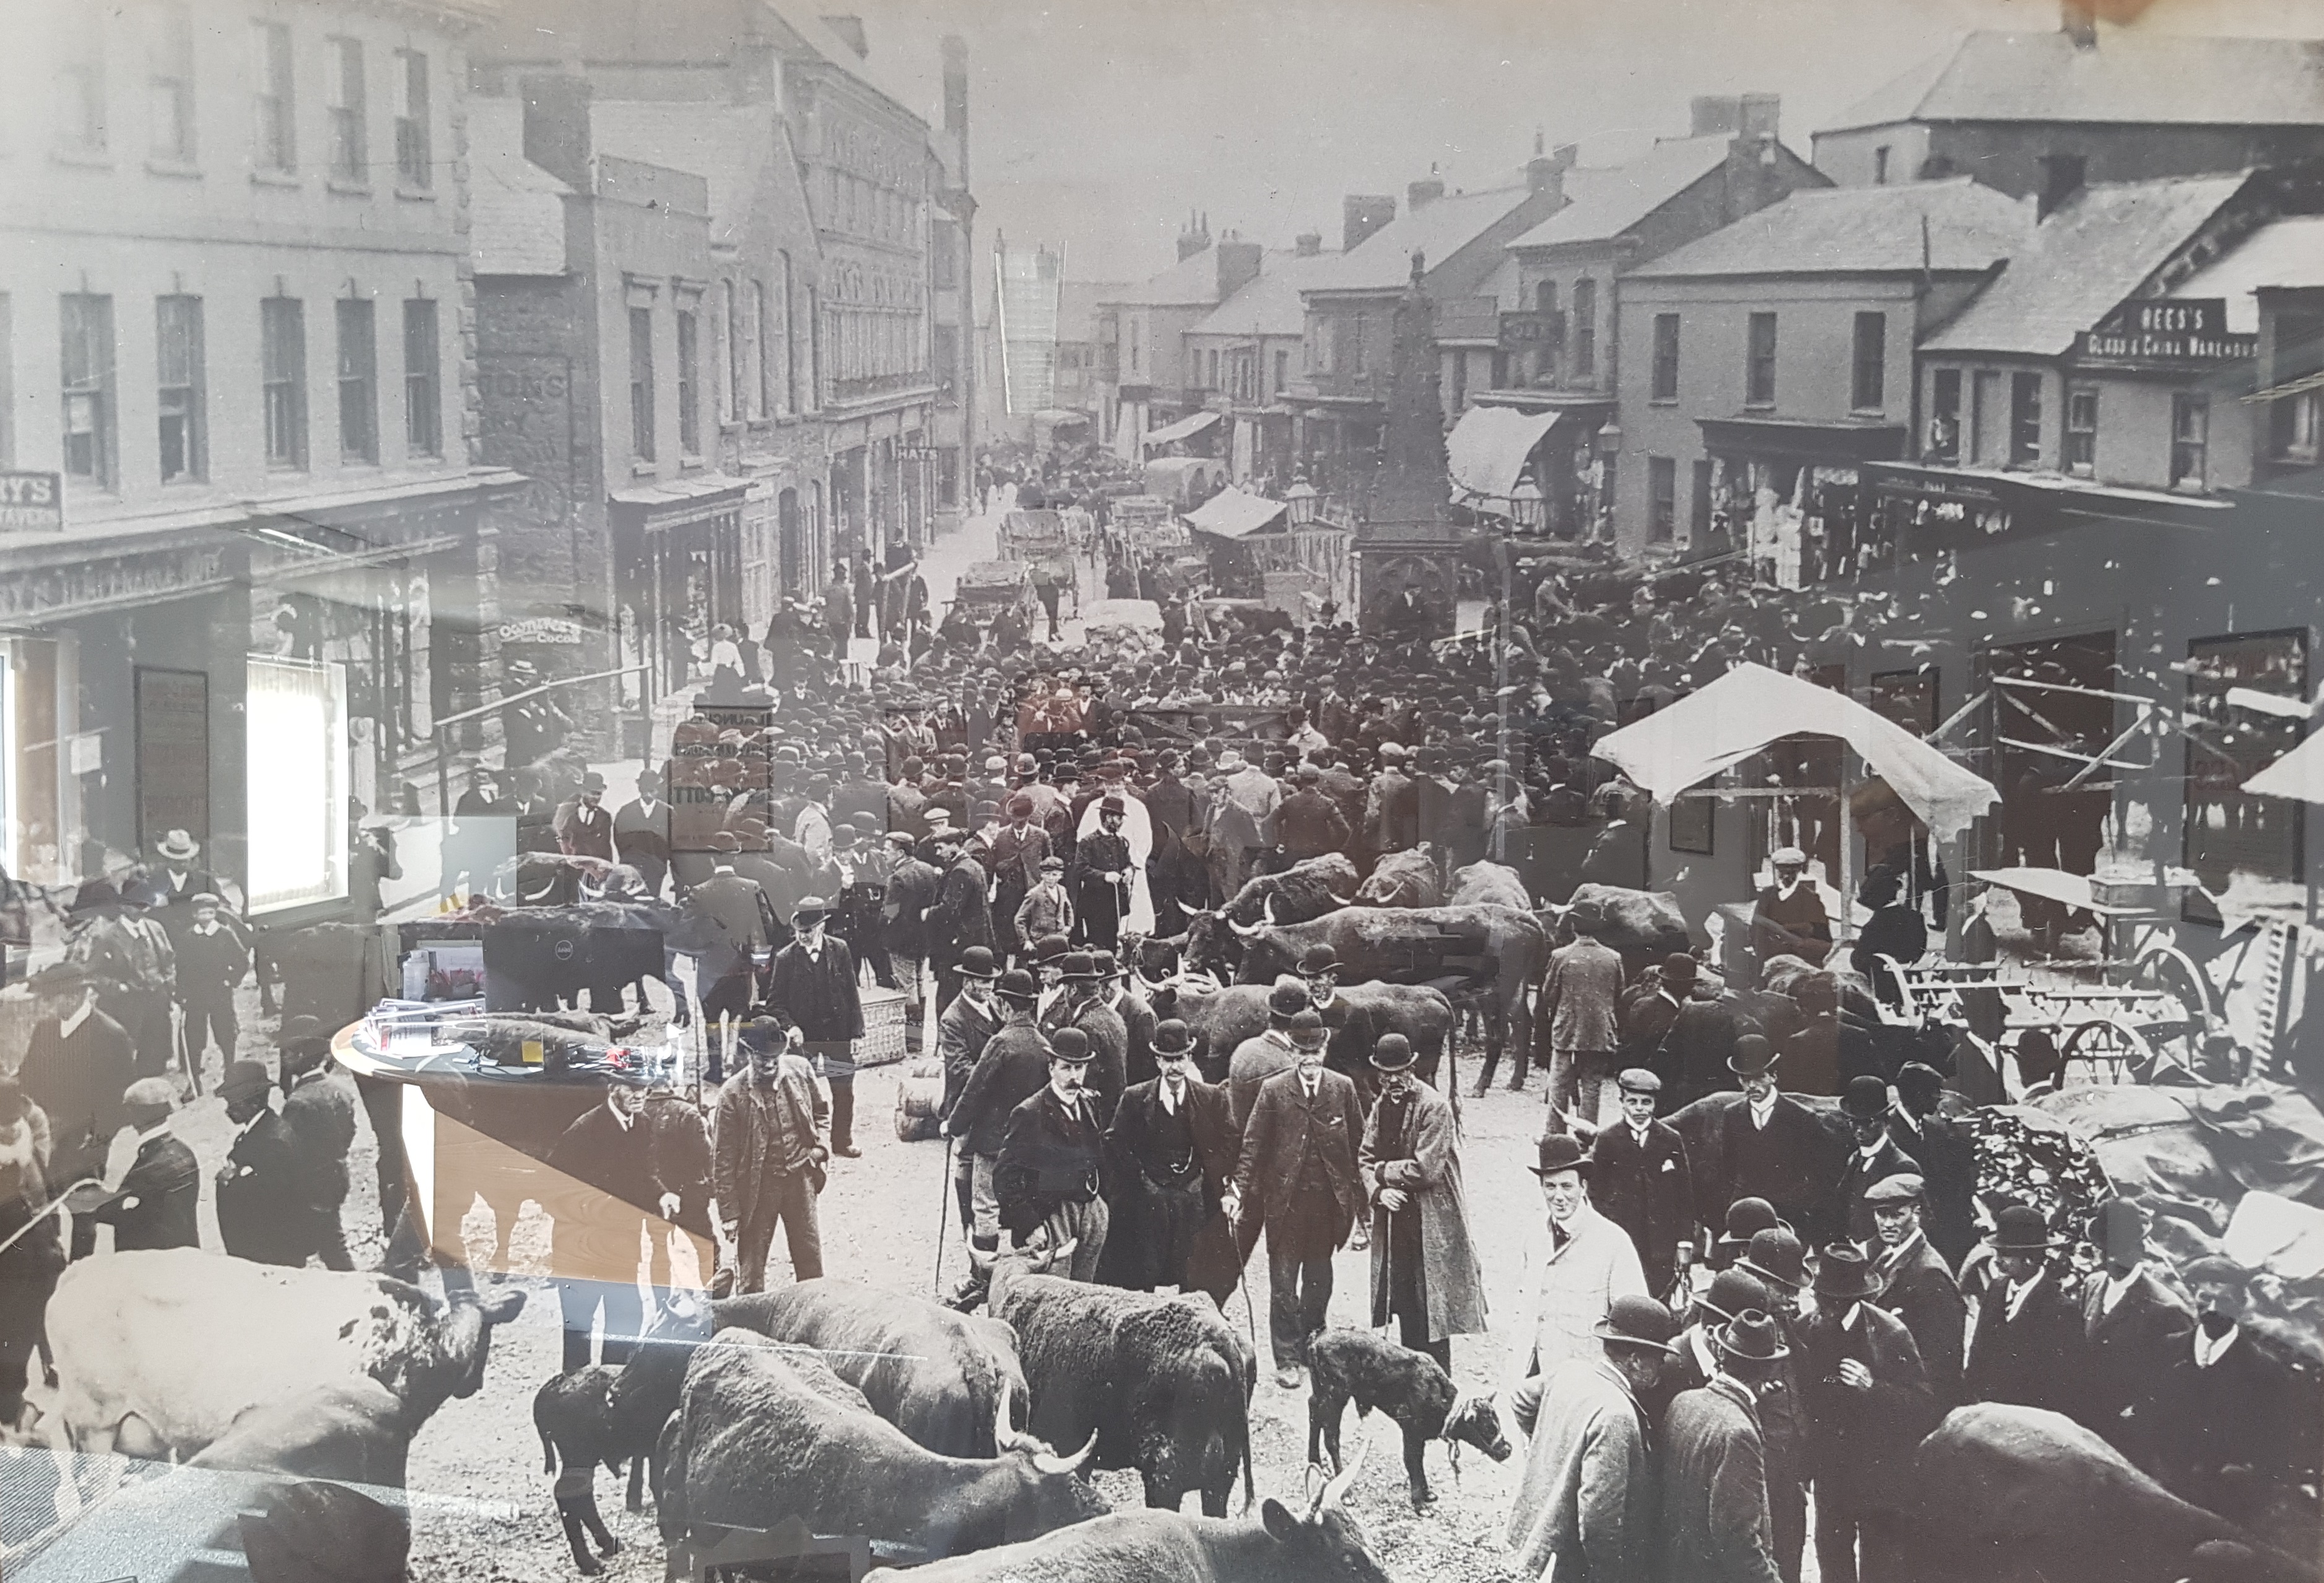 Kivells Holsworthy Livestock Market in 1901